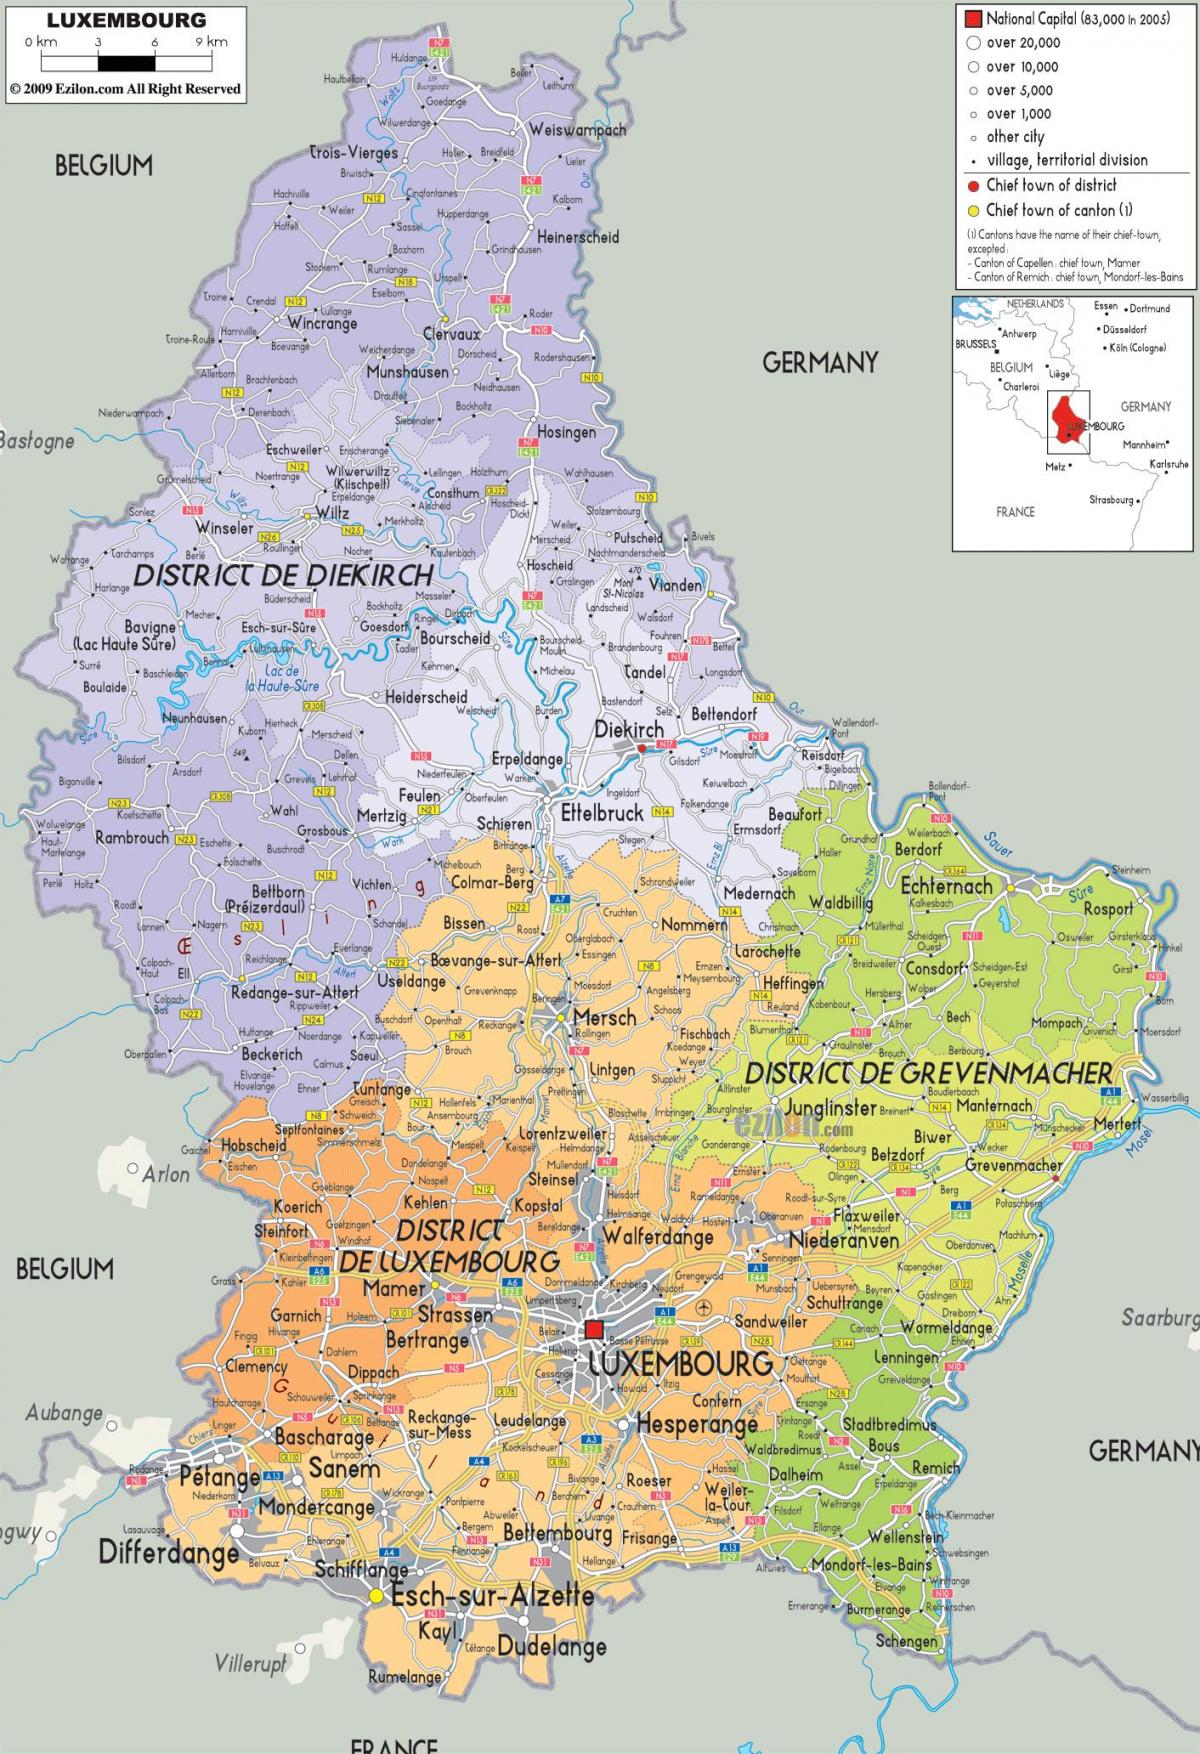 Luxembourg peta negara